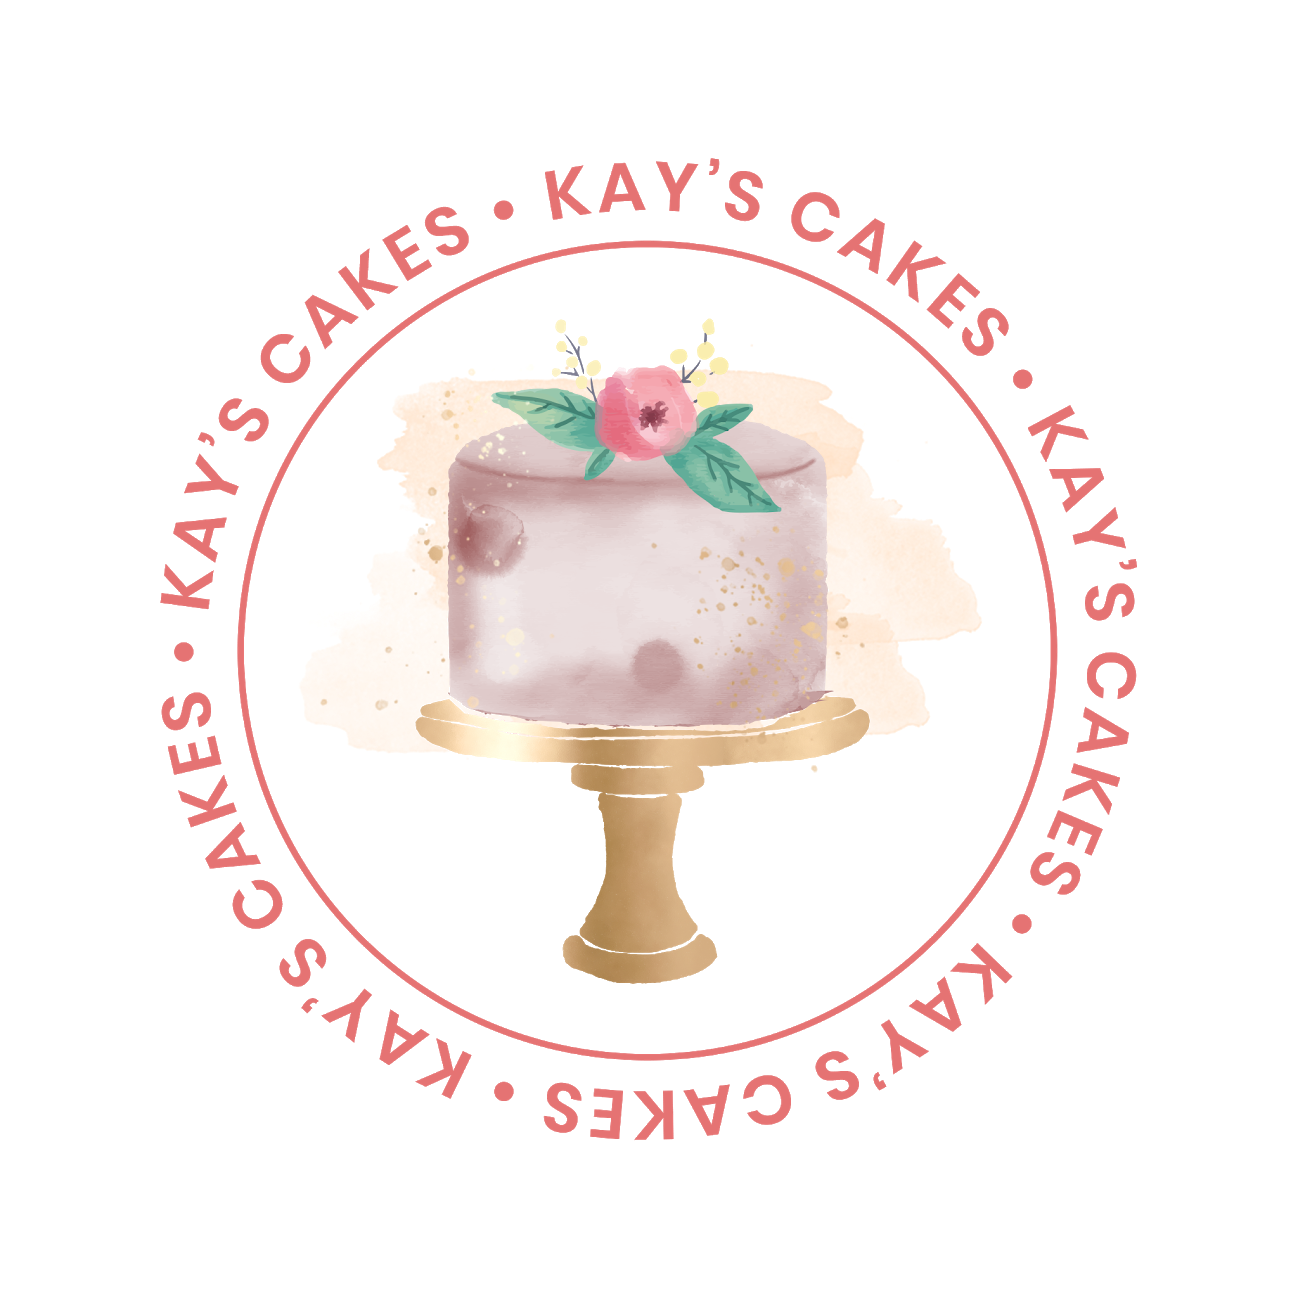 Custom Cake Studio - Scrumptious Branding & Logo Design • Idle Plum Design  Co